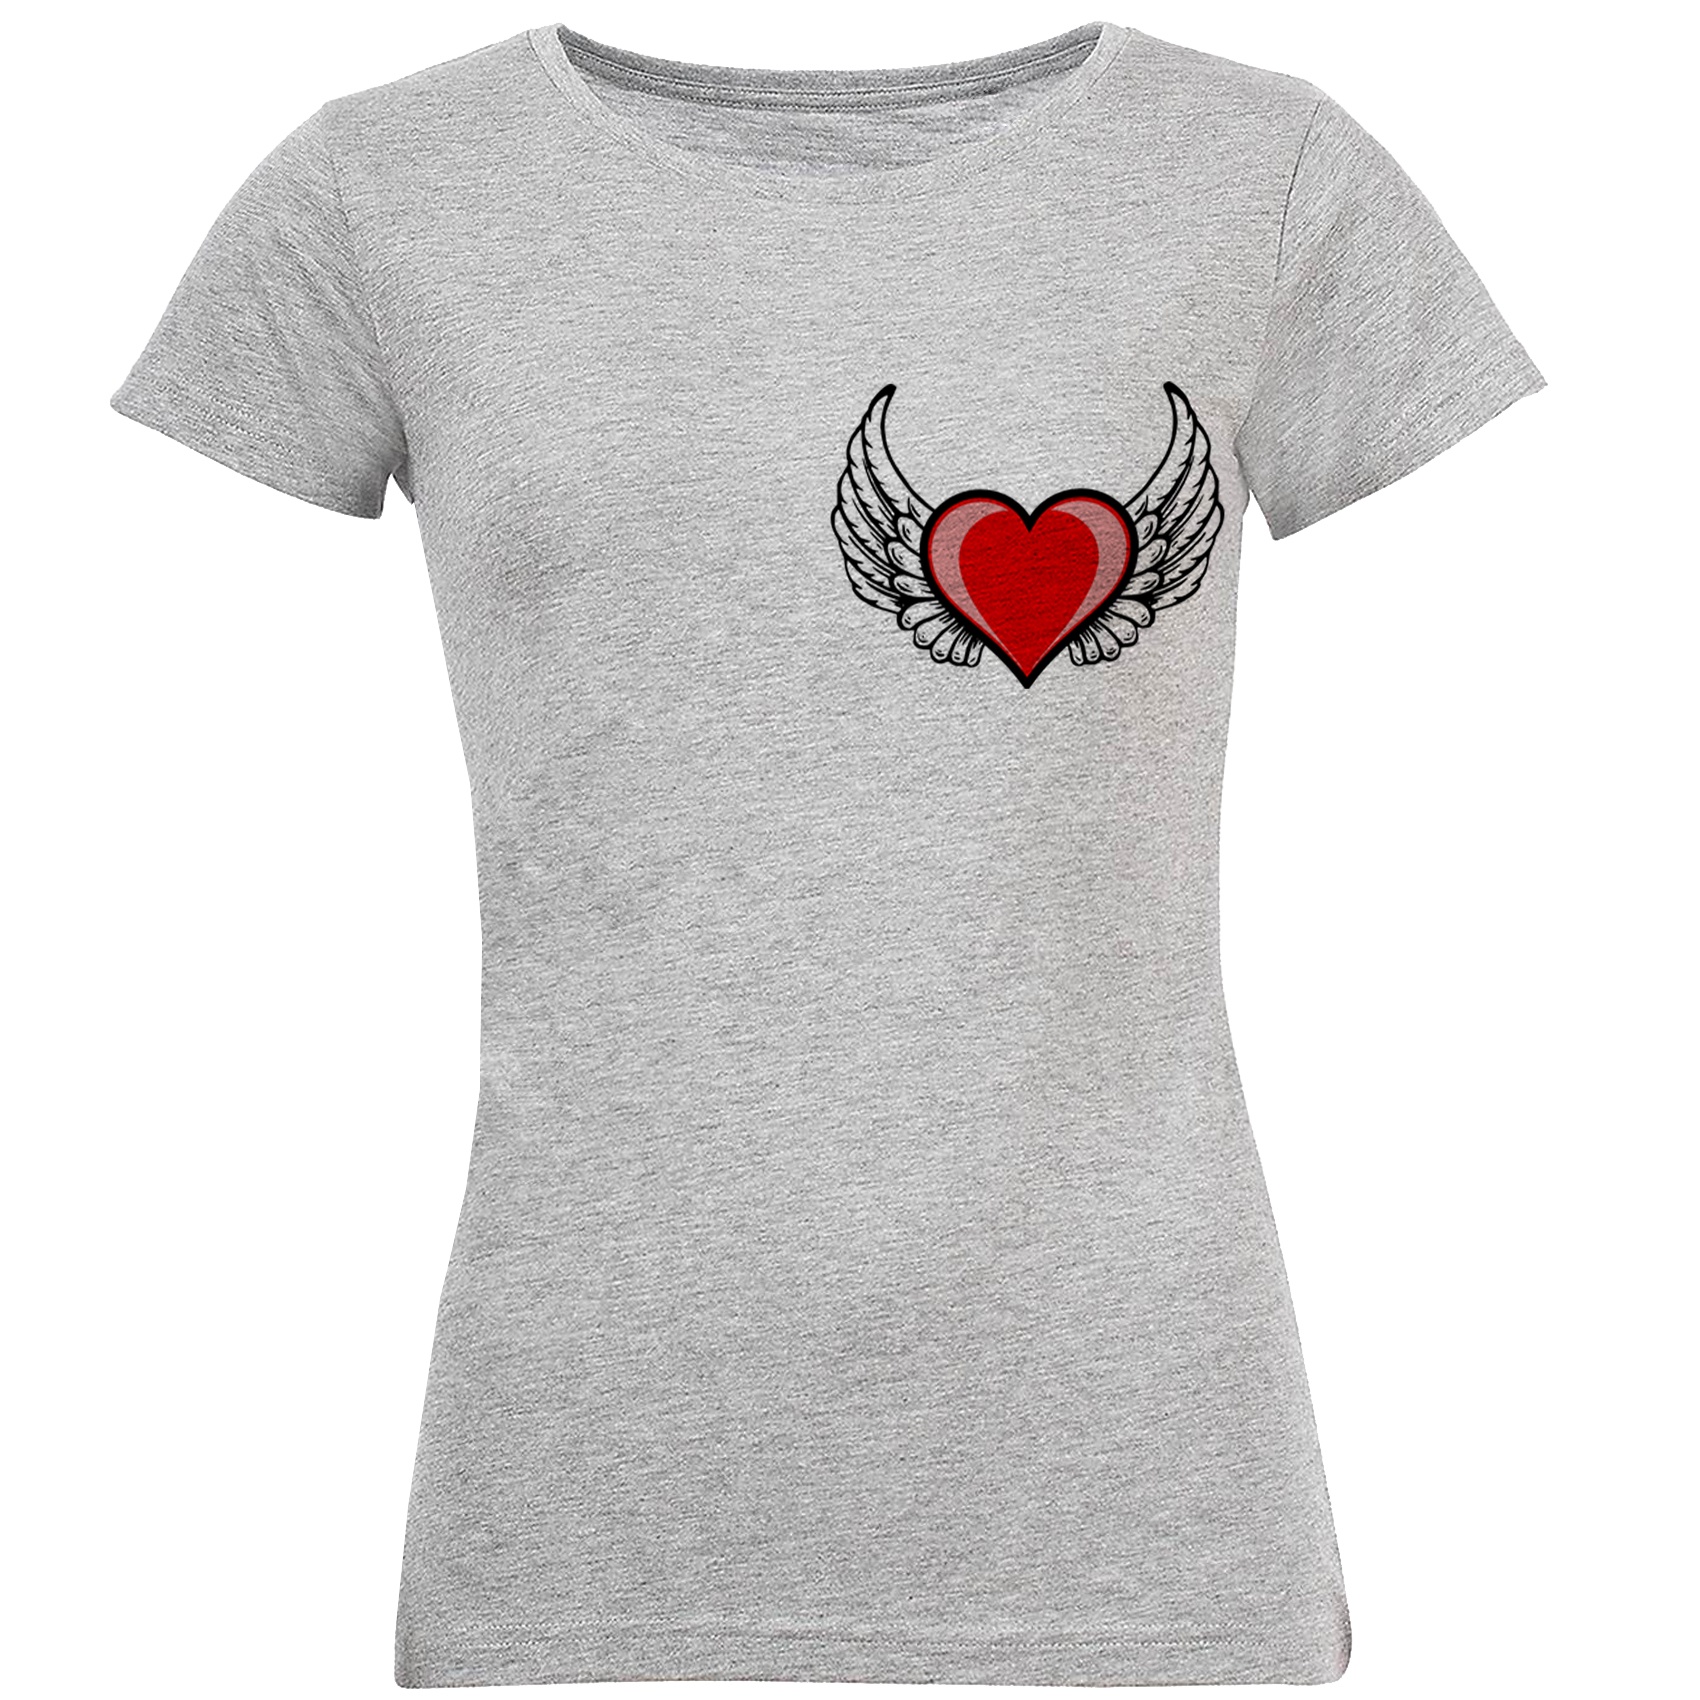 نقد و بررسی تی شرت آستین کوتاه زنانه طرح قلب کد S125 توسط خریداران